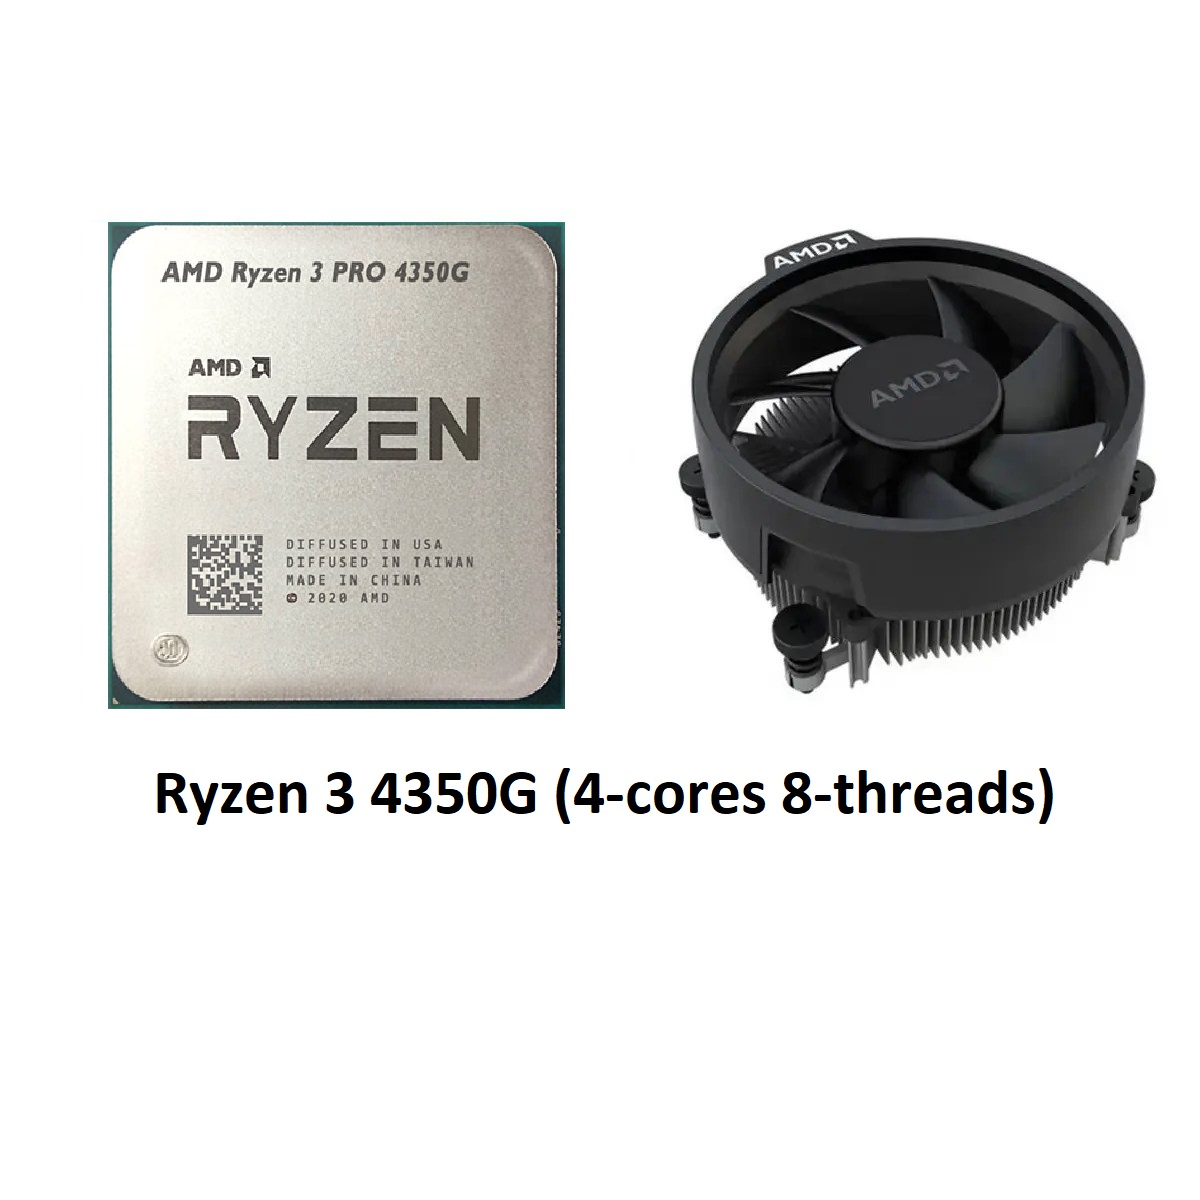 Кулер AMD Ryzen 3 Pro 4350g. AMD Ryzen 3 Pro 4350g am4, 4 x 3800 МГЦ. Ryzen 3 4350g Pro в 3d. Ryzen 3 4350g характеристика. Ryzen 3 pro 4350g